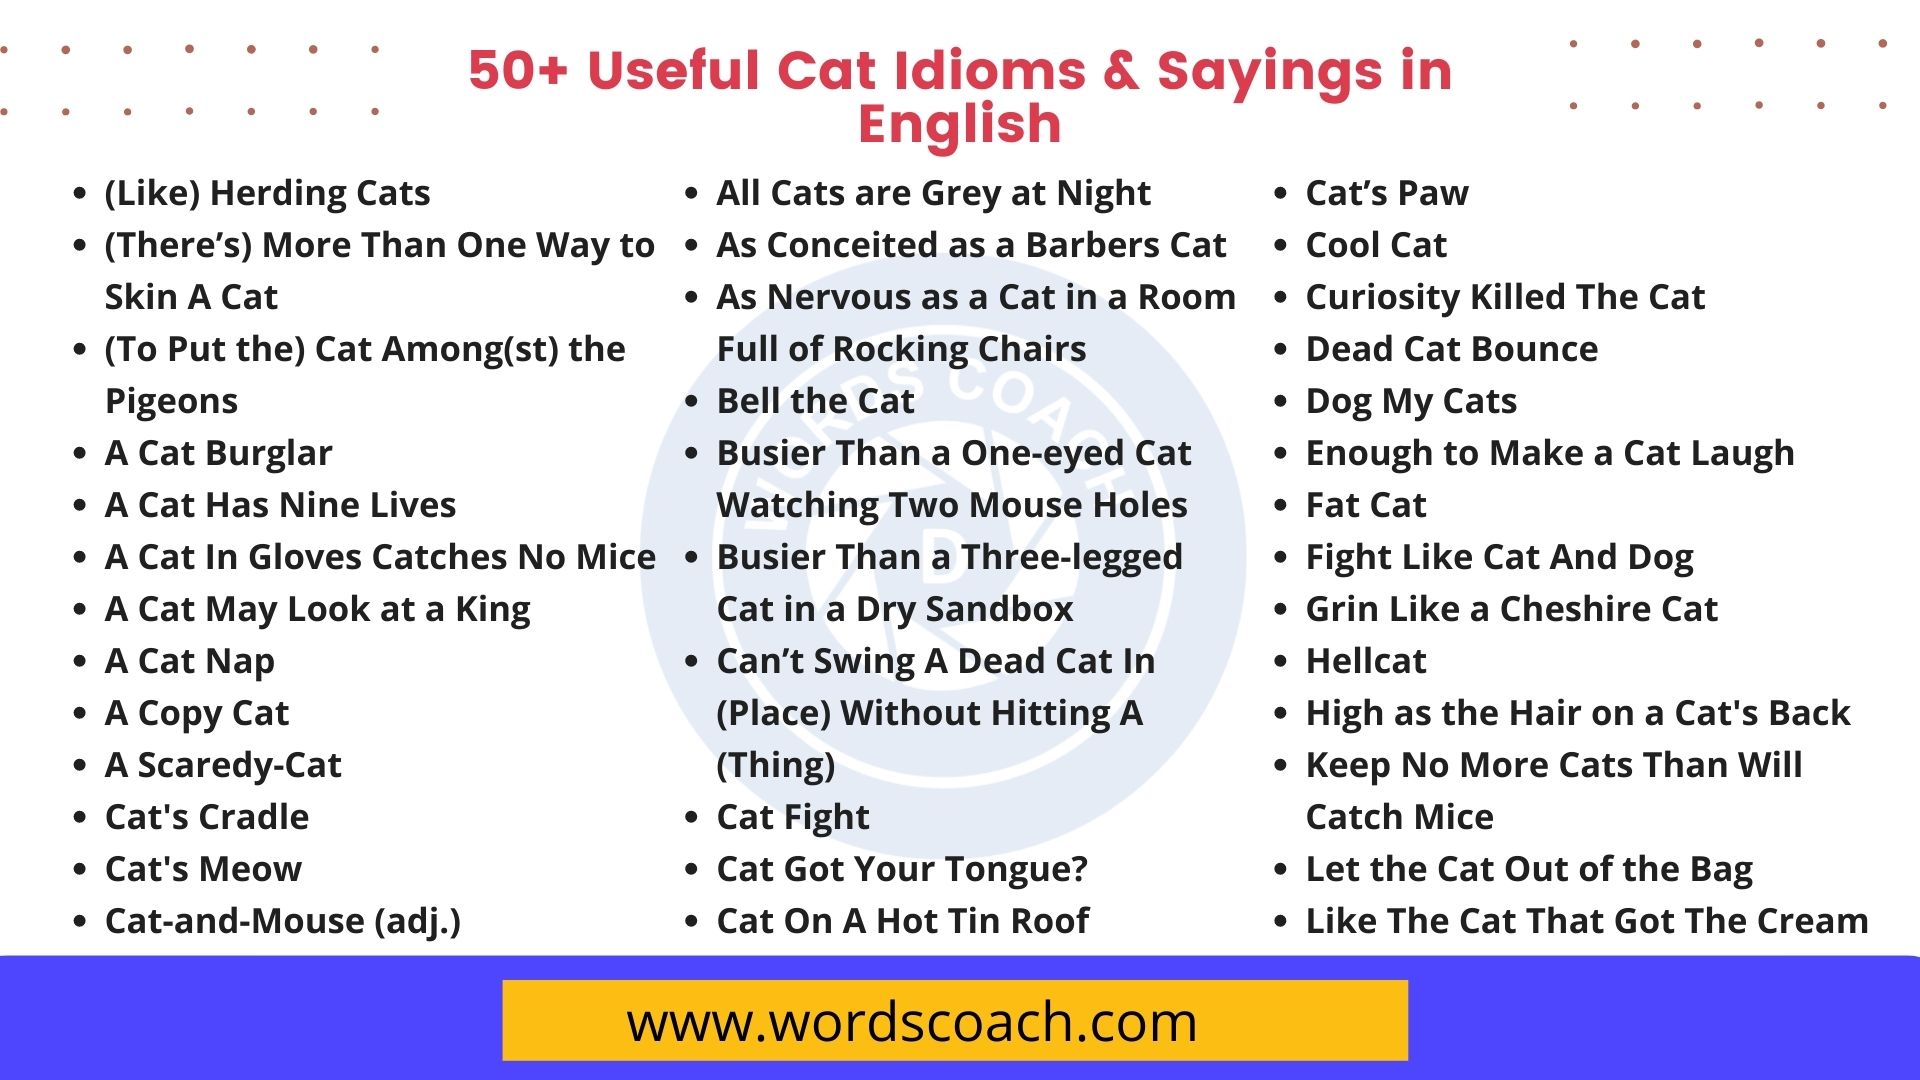 50+ Useful Cat Idioms & Sayings in English - Word Coach